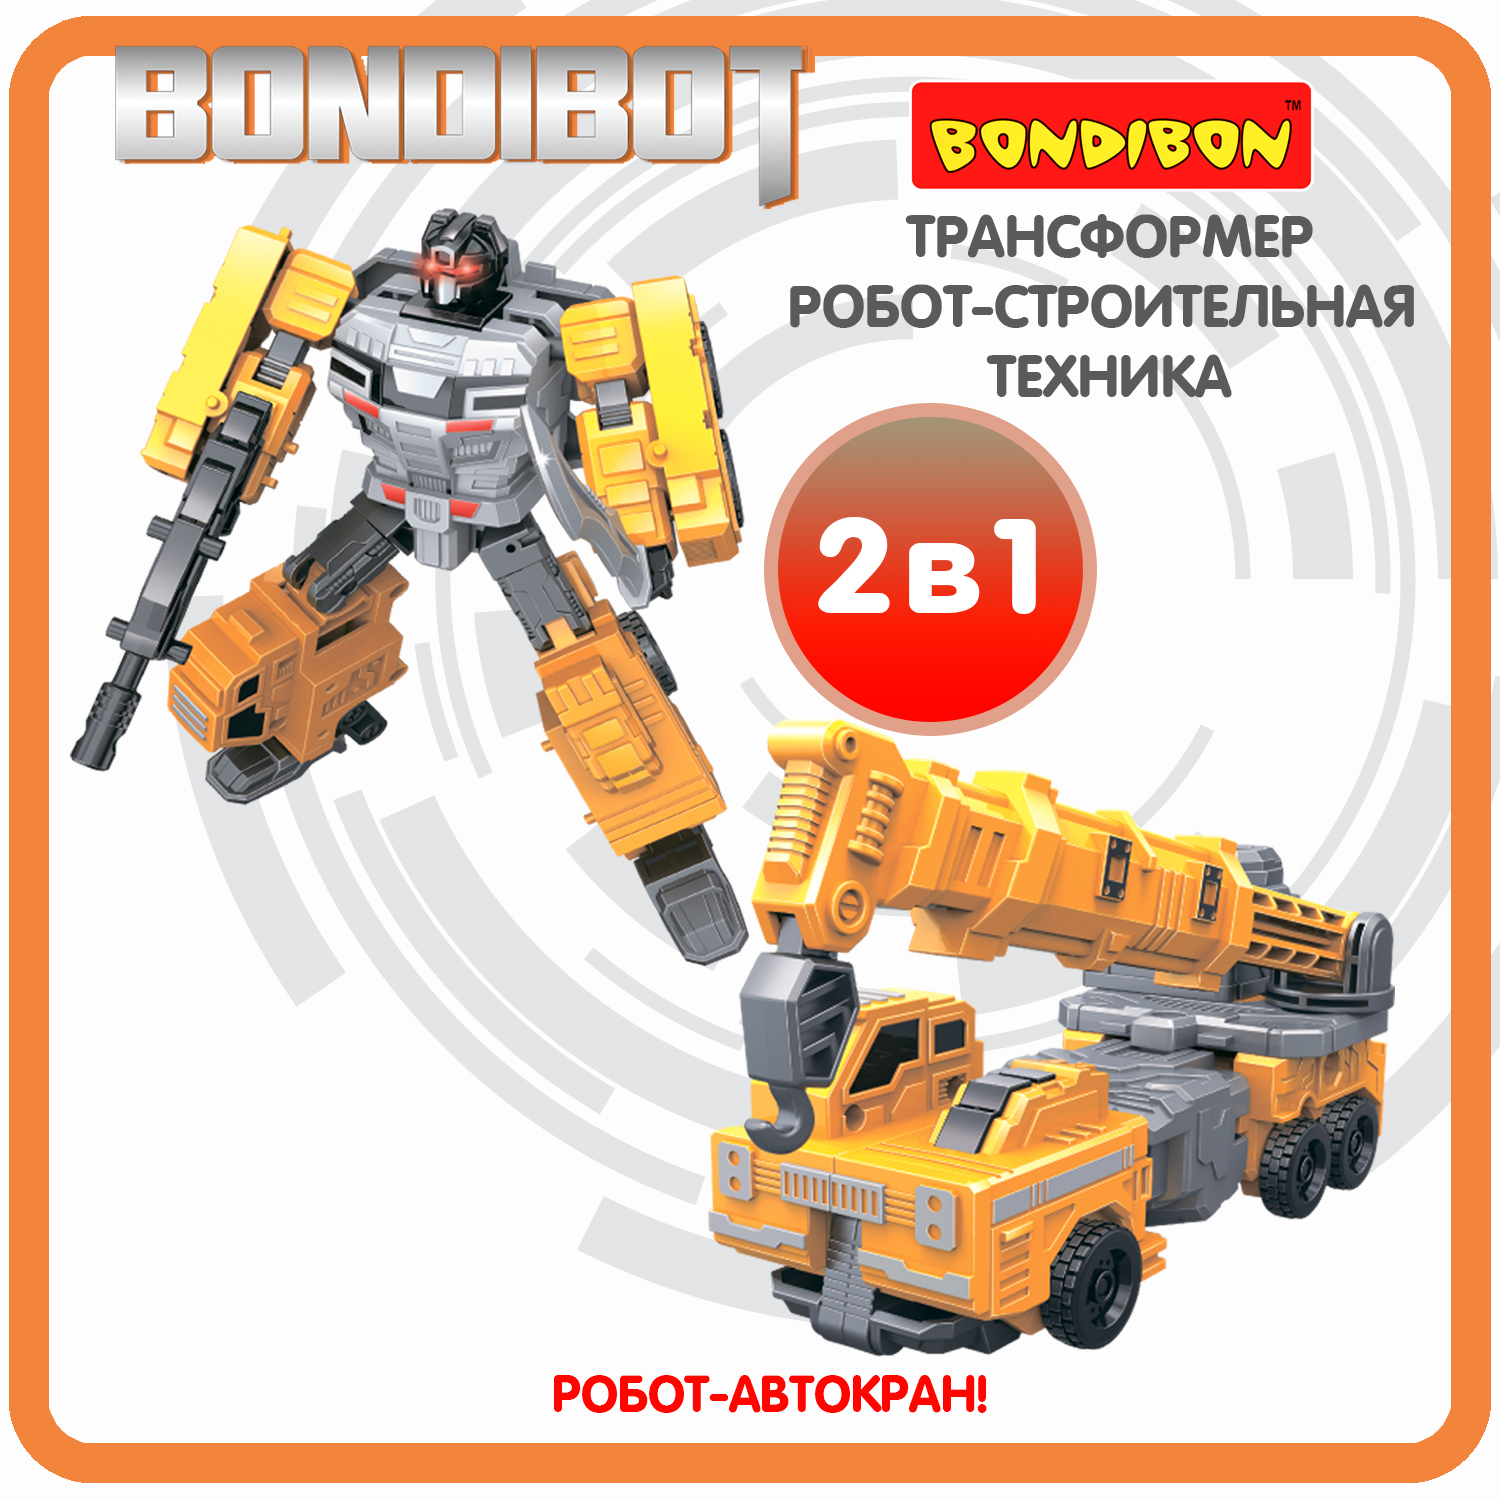 Трансформер робот-строительная техника, 2в1 BONDIBOT Bondibon, автокран / ВВ6050 форма машина автокран детский сад